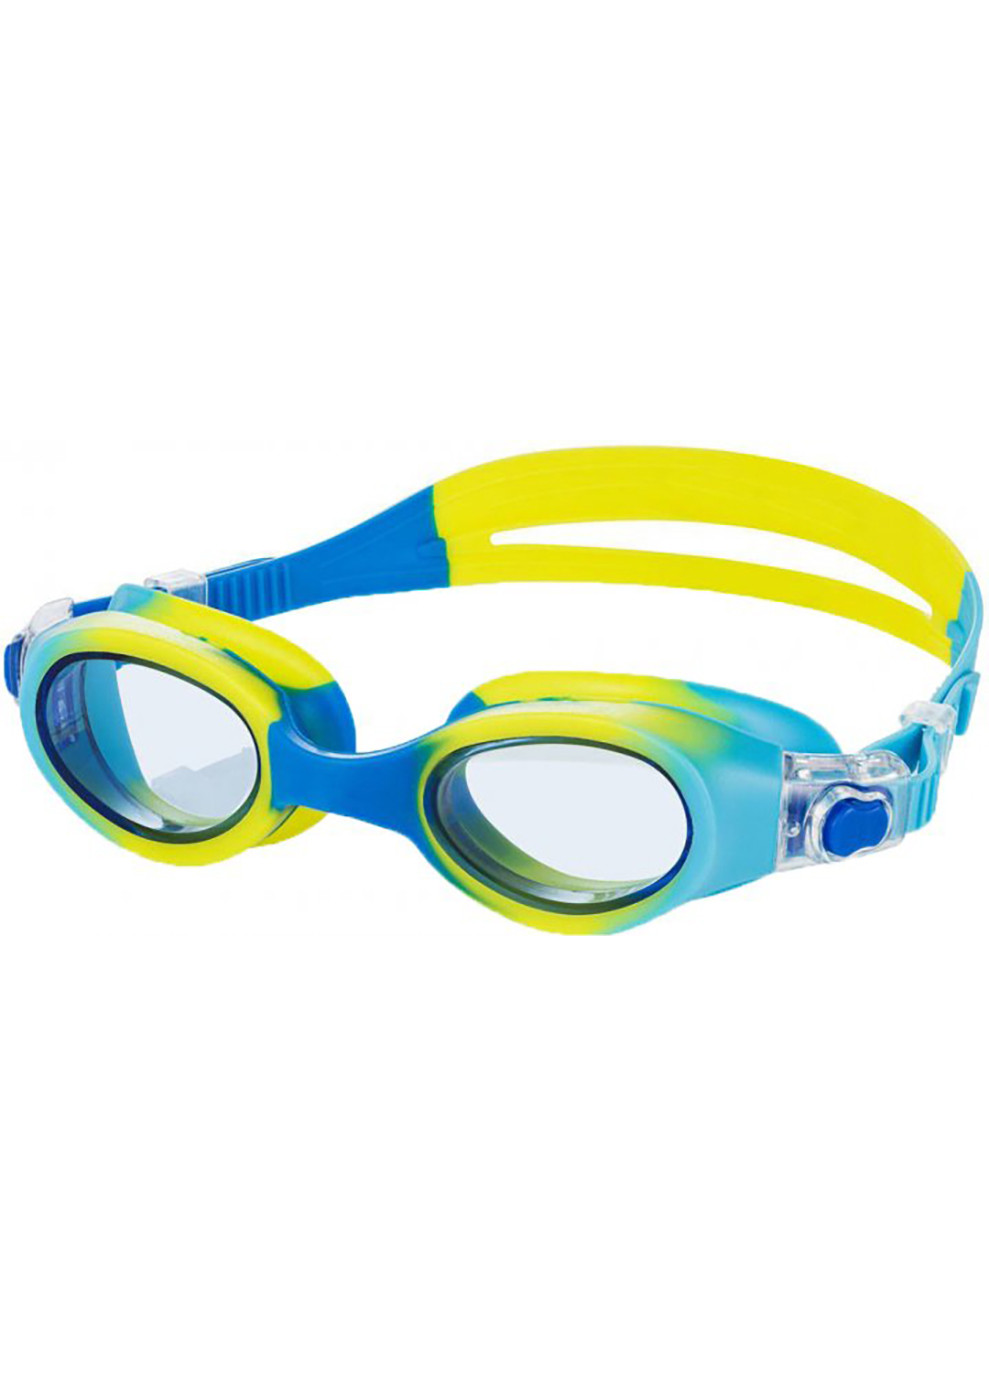 Окуляри для плавання Aquaspeed PEGAZ Синьо-желто-блакитні OSFM 209-18 Aqua Speed (259215237)